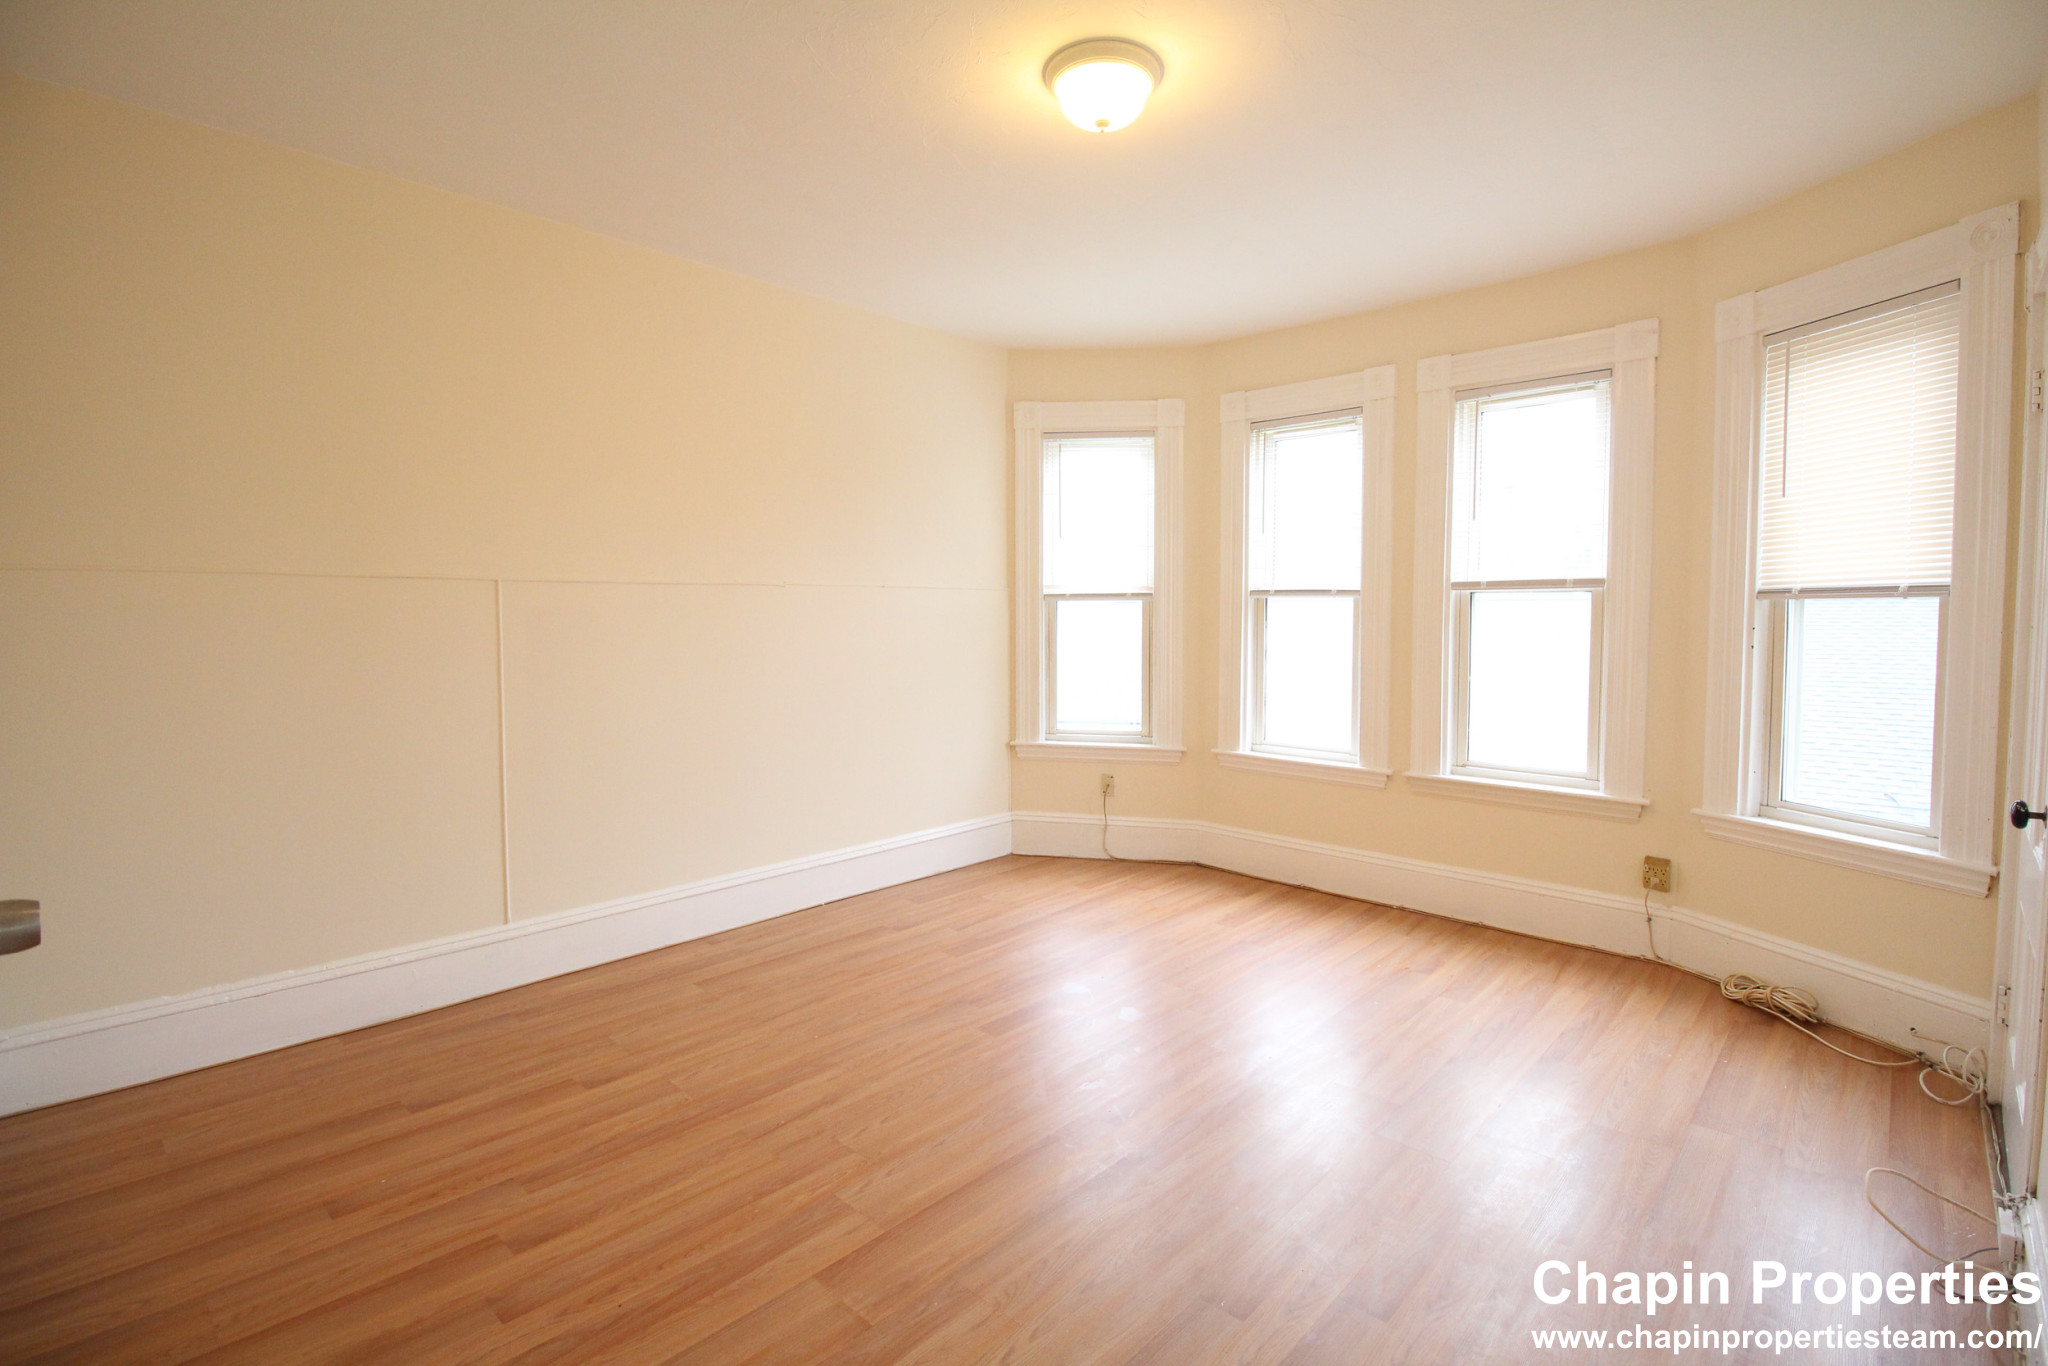 Photos of apartment on Warren St.,Boston MA 02119